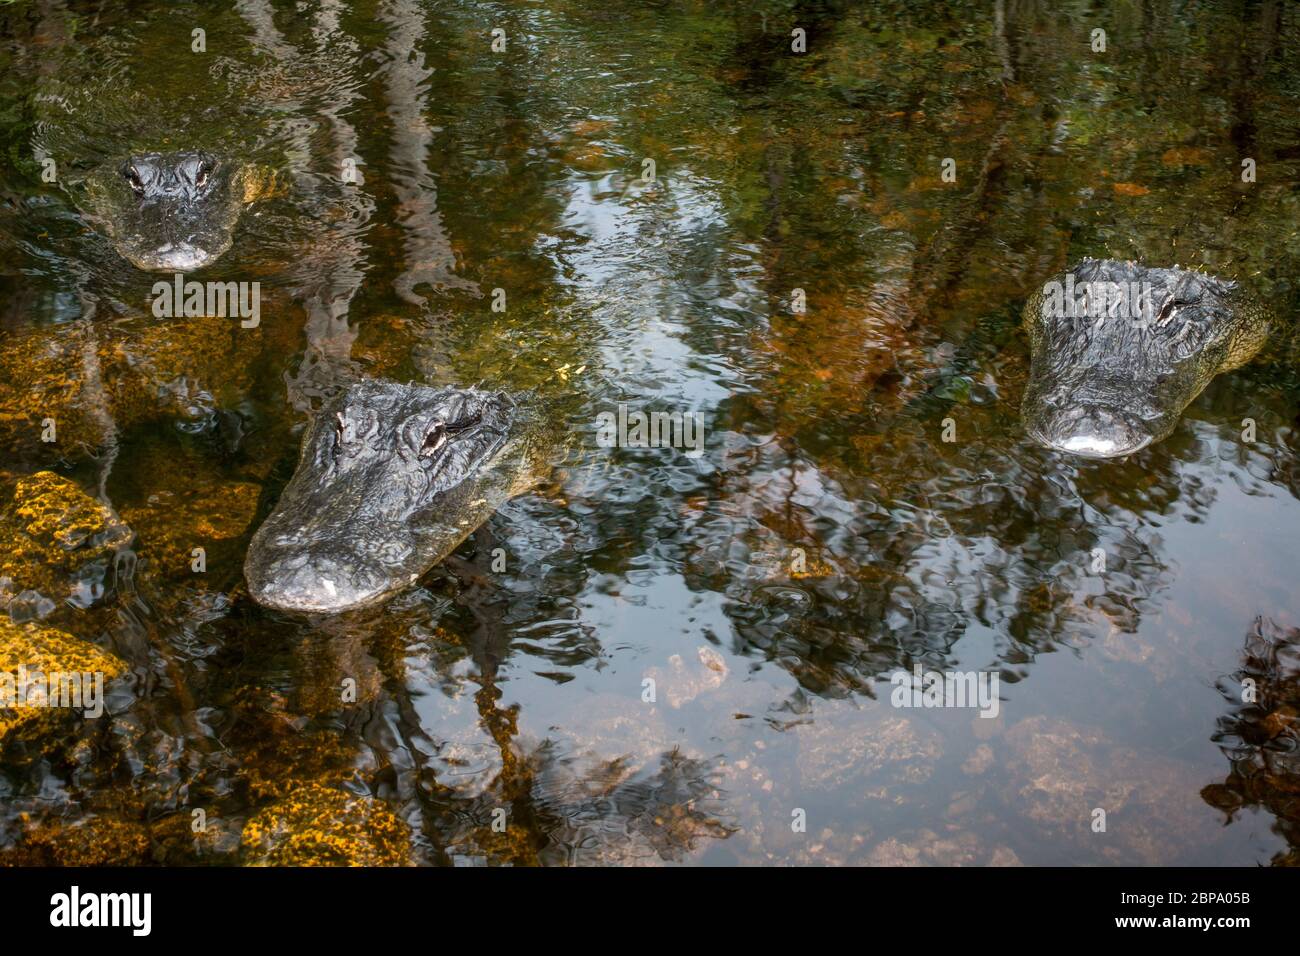 L'alligatore americano galleggia in acque tranquille profonde nella palude della foresta di cipressi, la Big Cypress Preserve, Everglades, Florida. Foto Stock